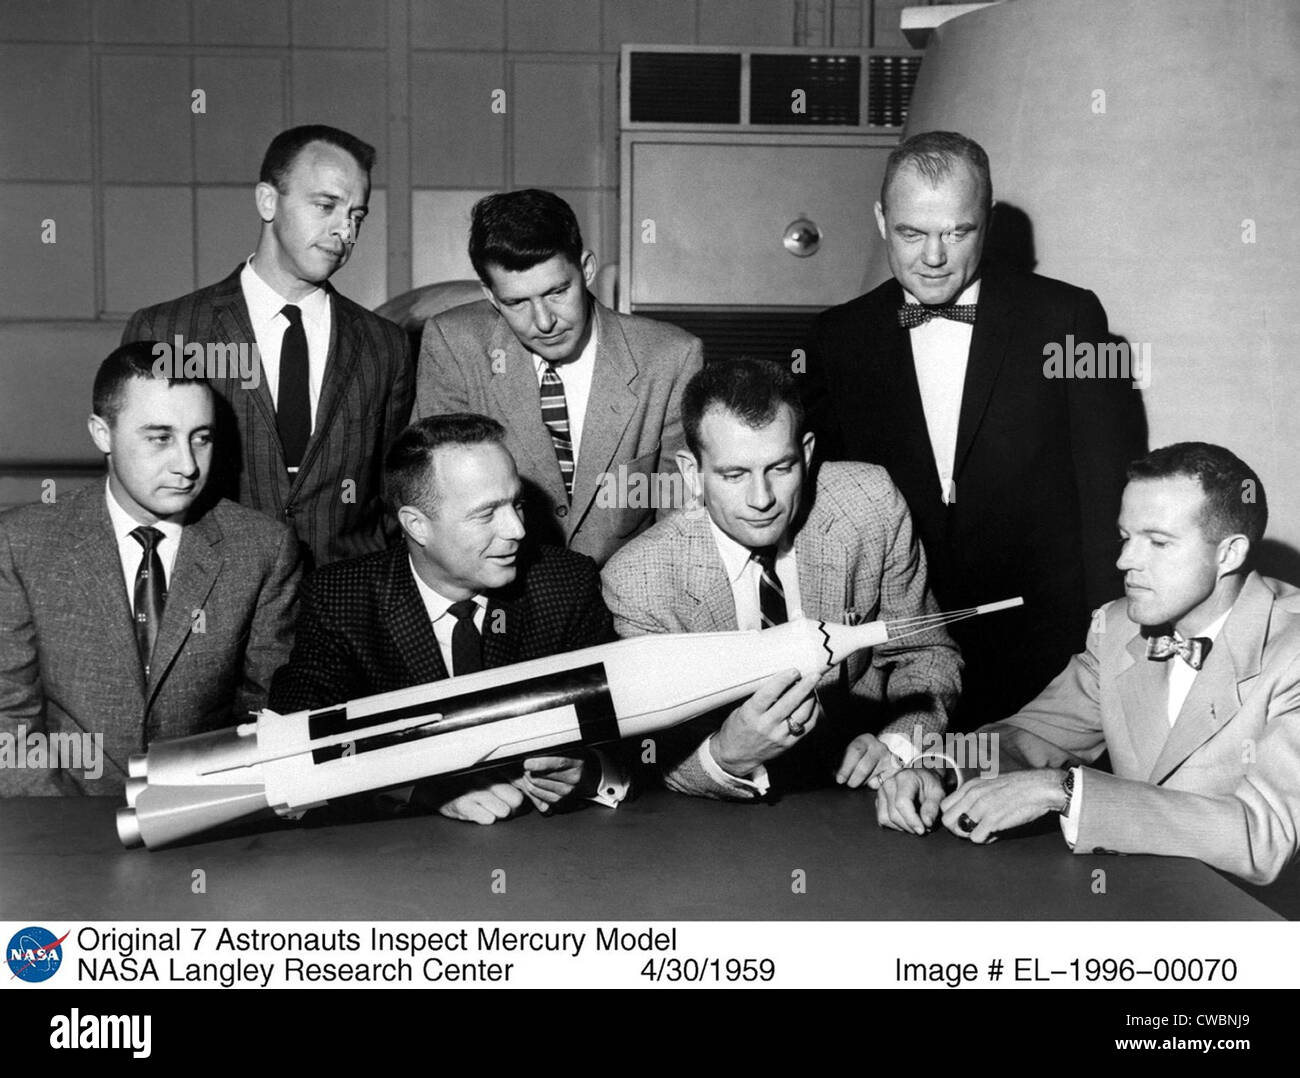 Progetto astronauti Mercury ispezionare modello Mercury dopo che essi sono stati introdotti al pubblico americano in aprile 1959. Da sinistra, Foto Stock